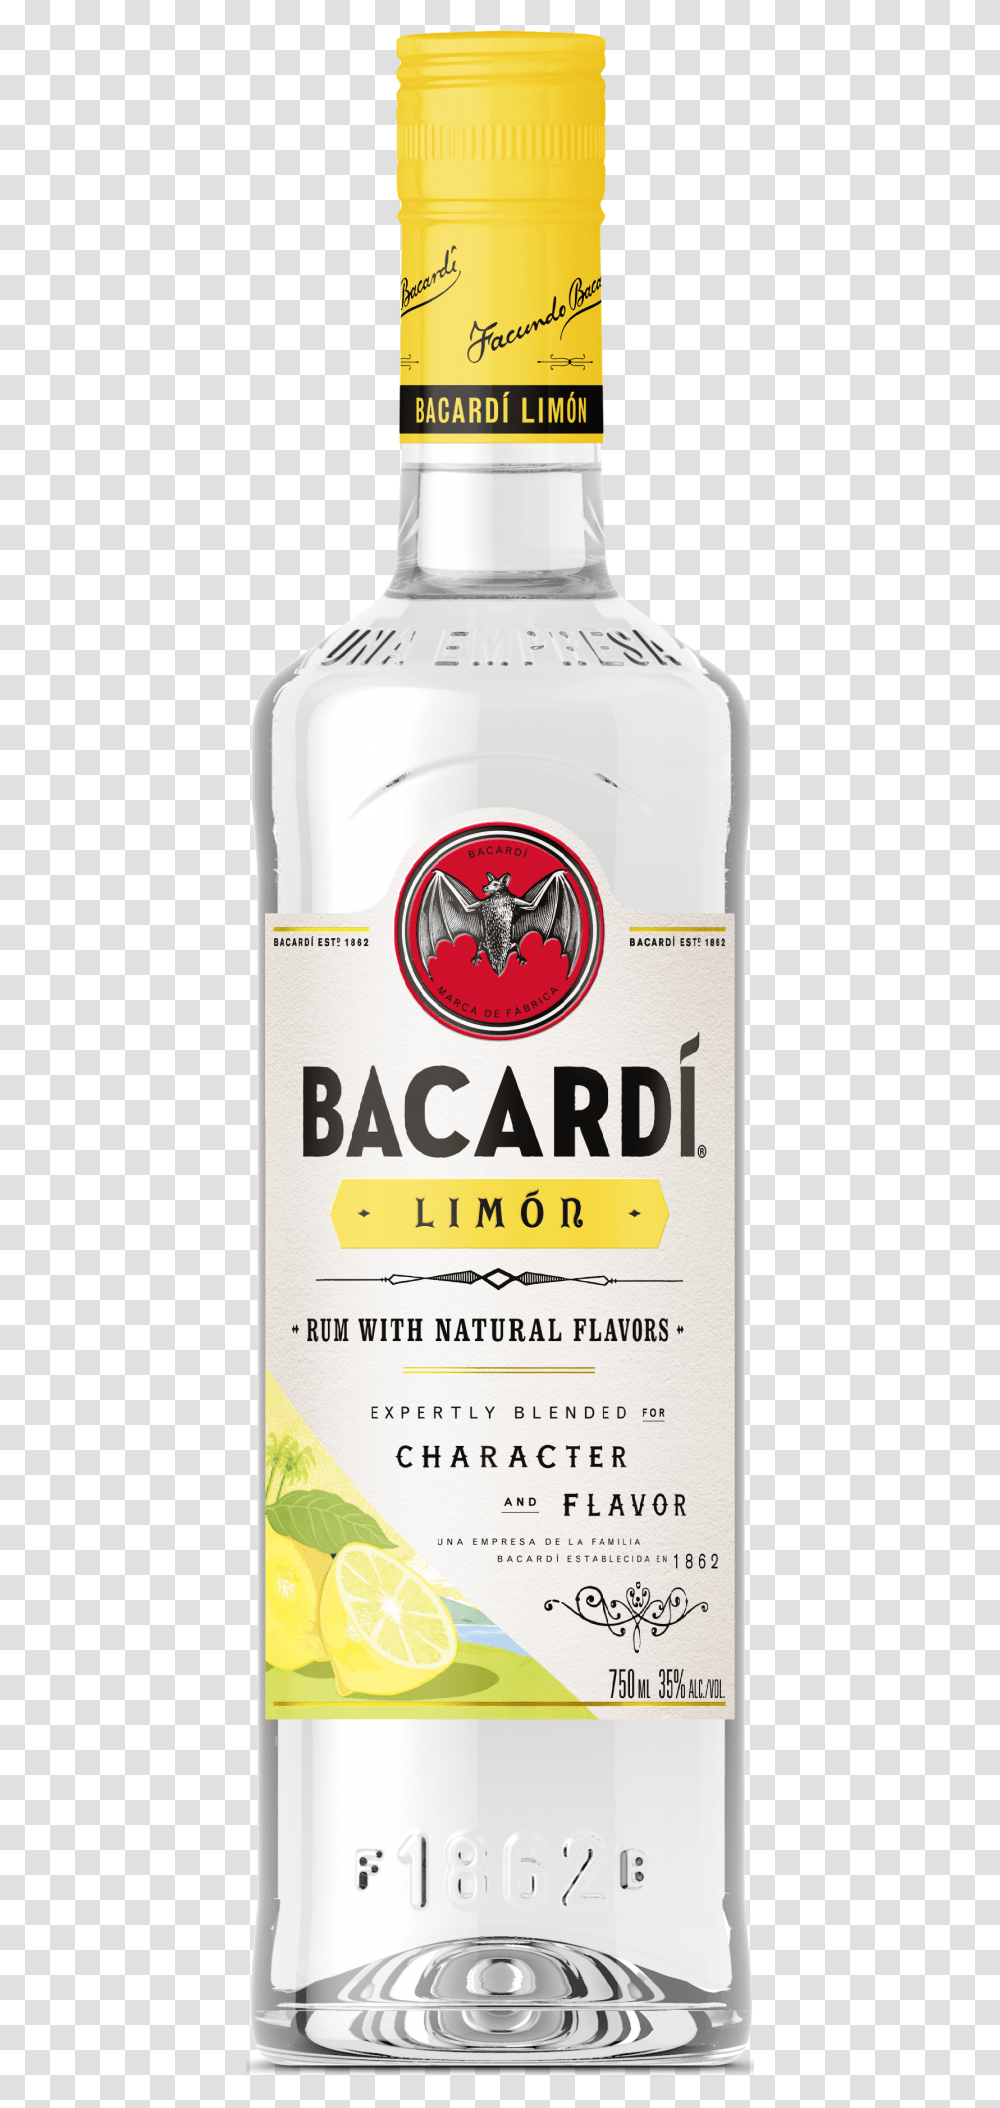 Limon Bacardi Coconut Rum, Label, Alcohol, Beverage Transparent Png